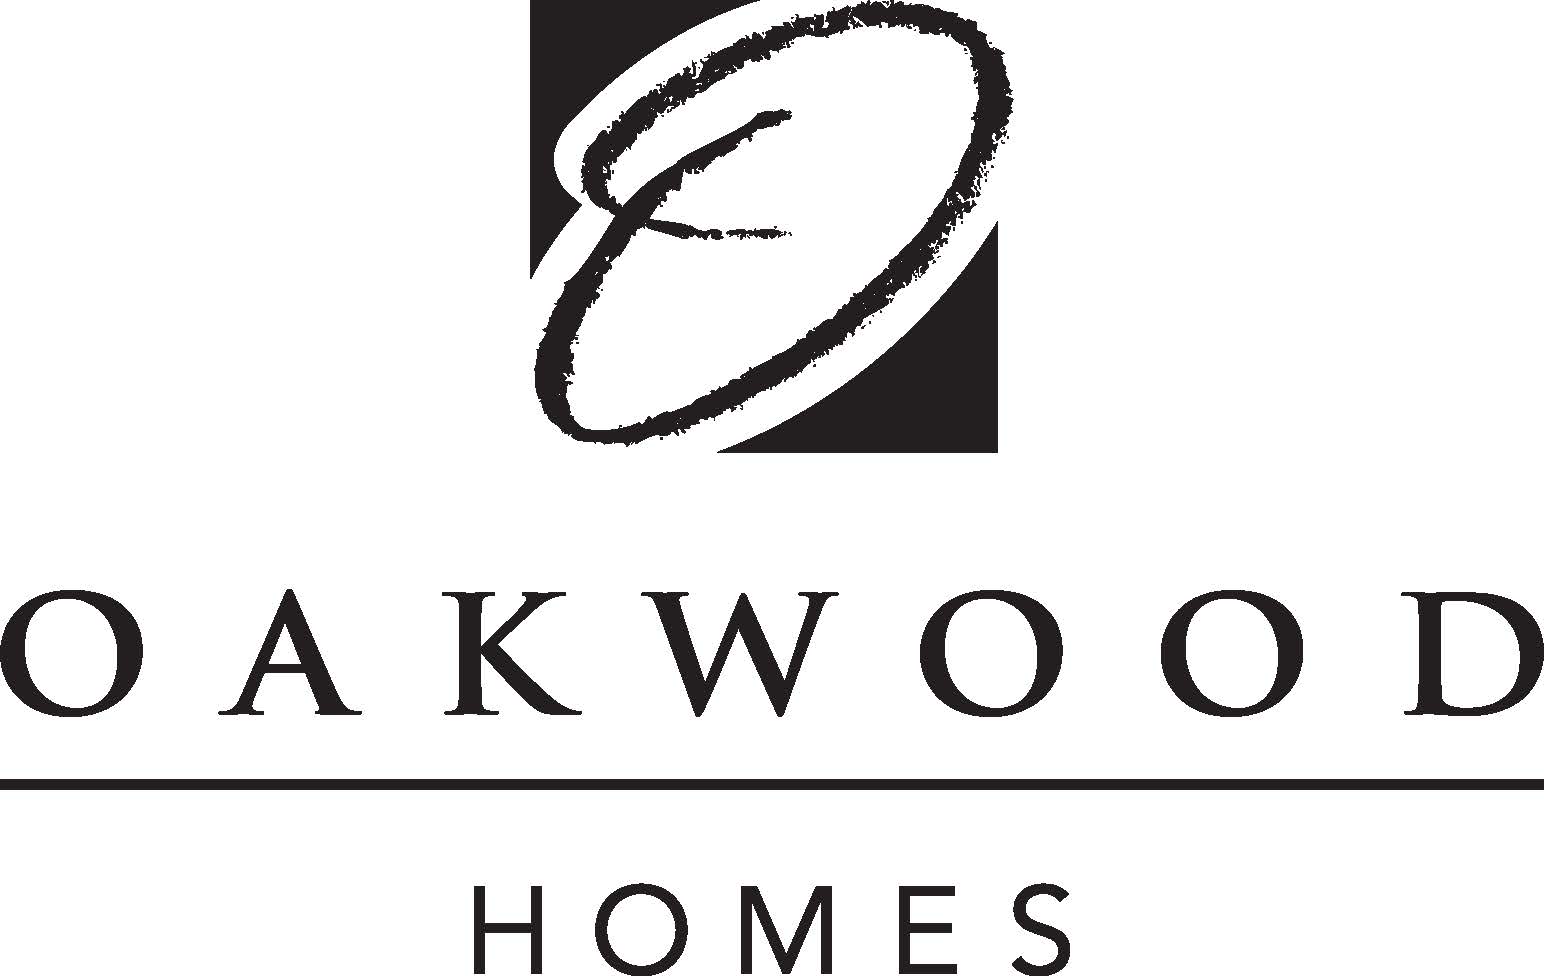 Oakwood Homes